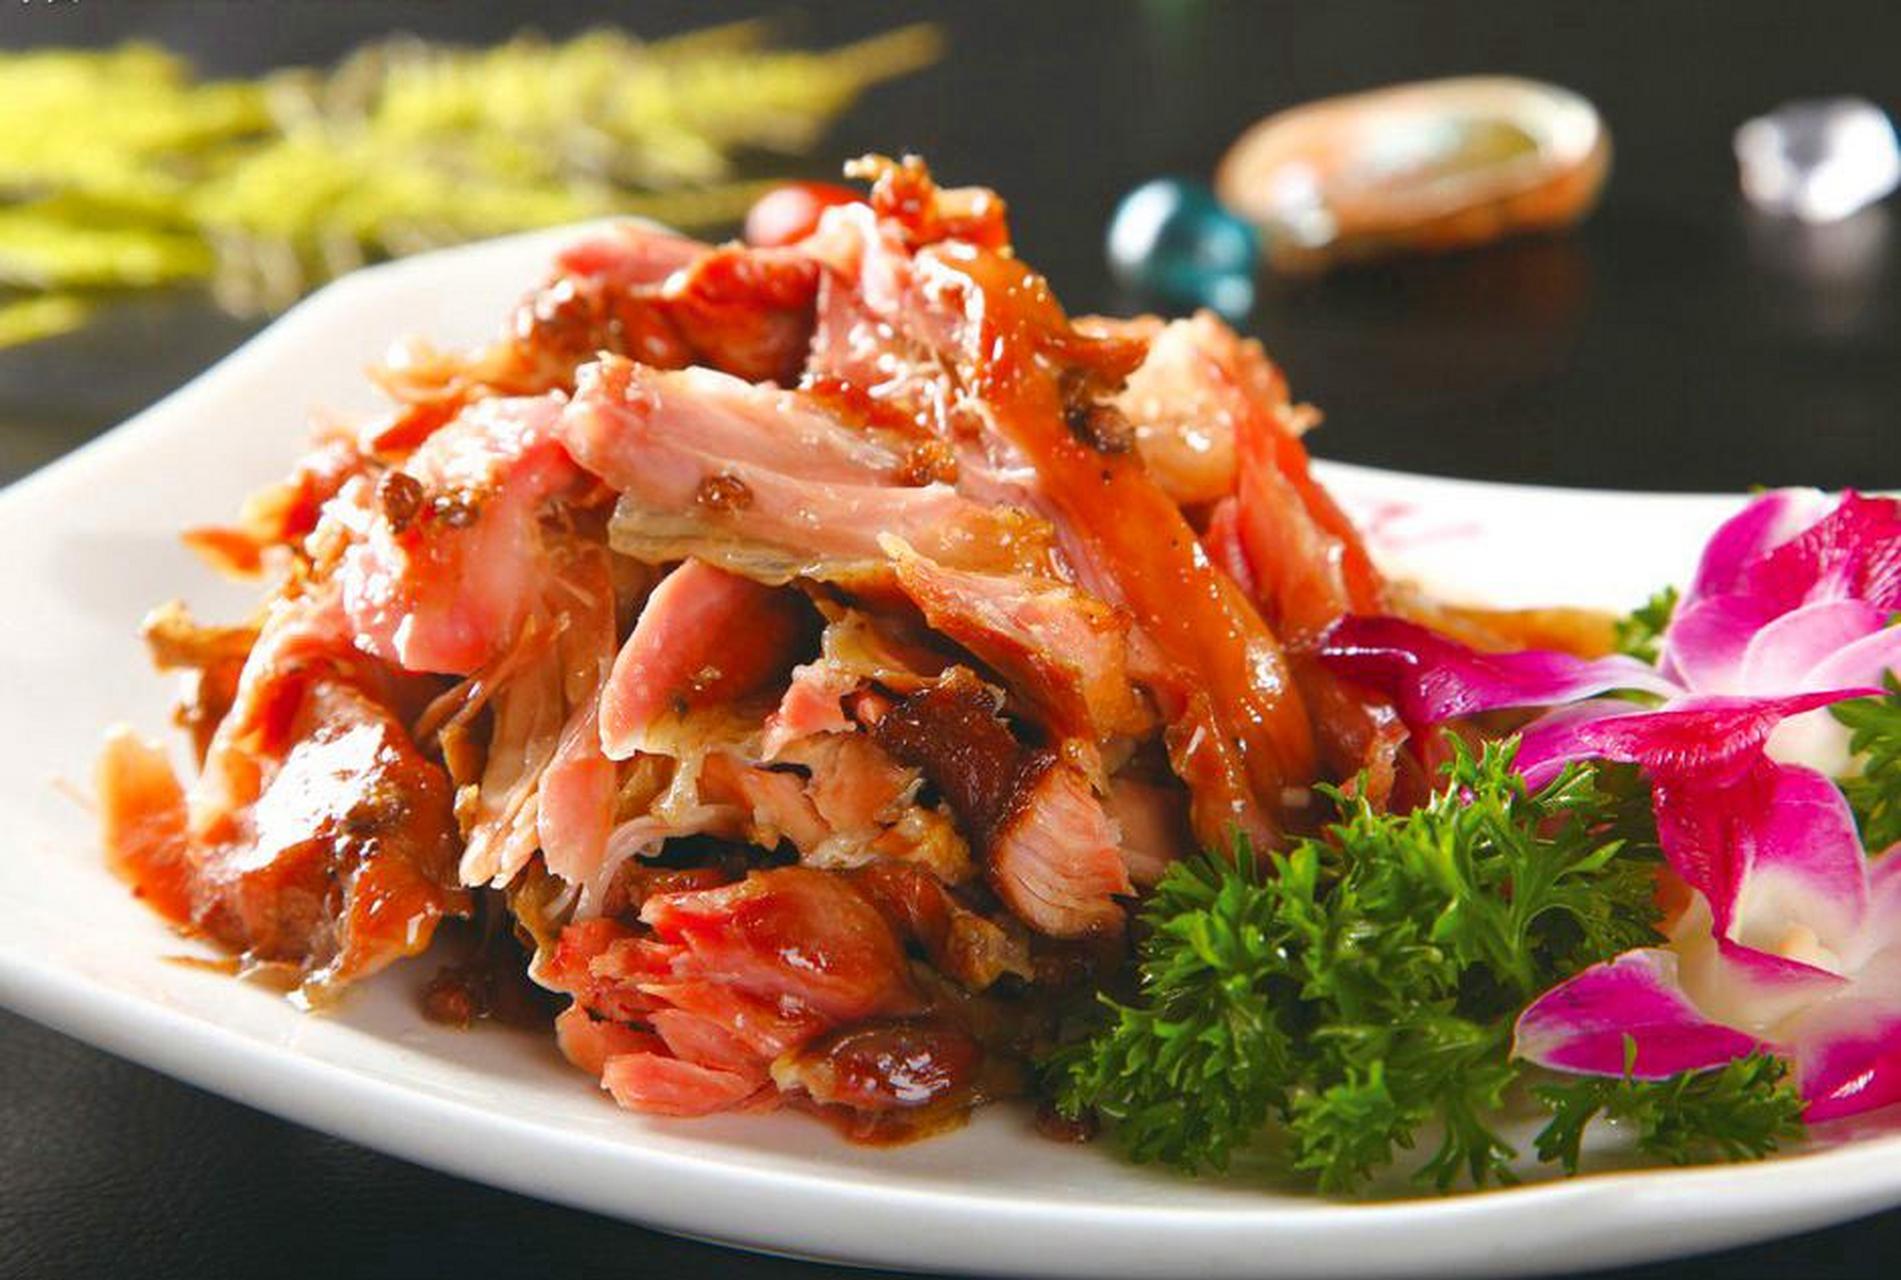 五香兔肉是河南开封著名的汉族小吃,菜色泽红亮,肉质软烂,卤制精良